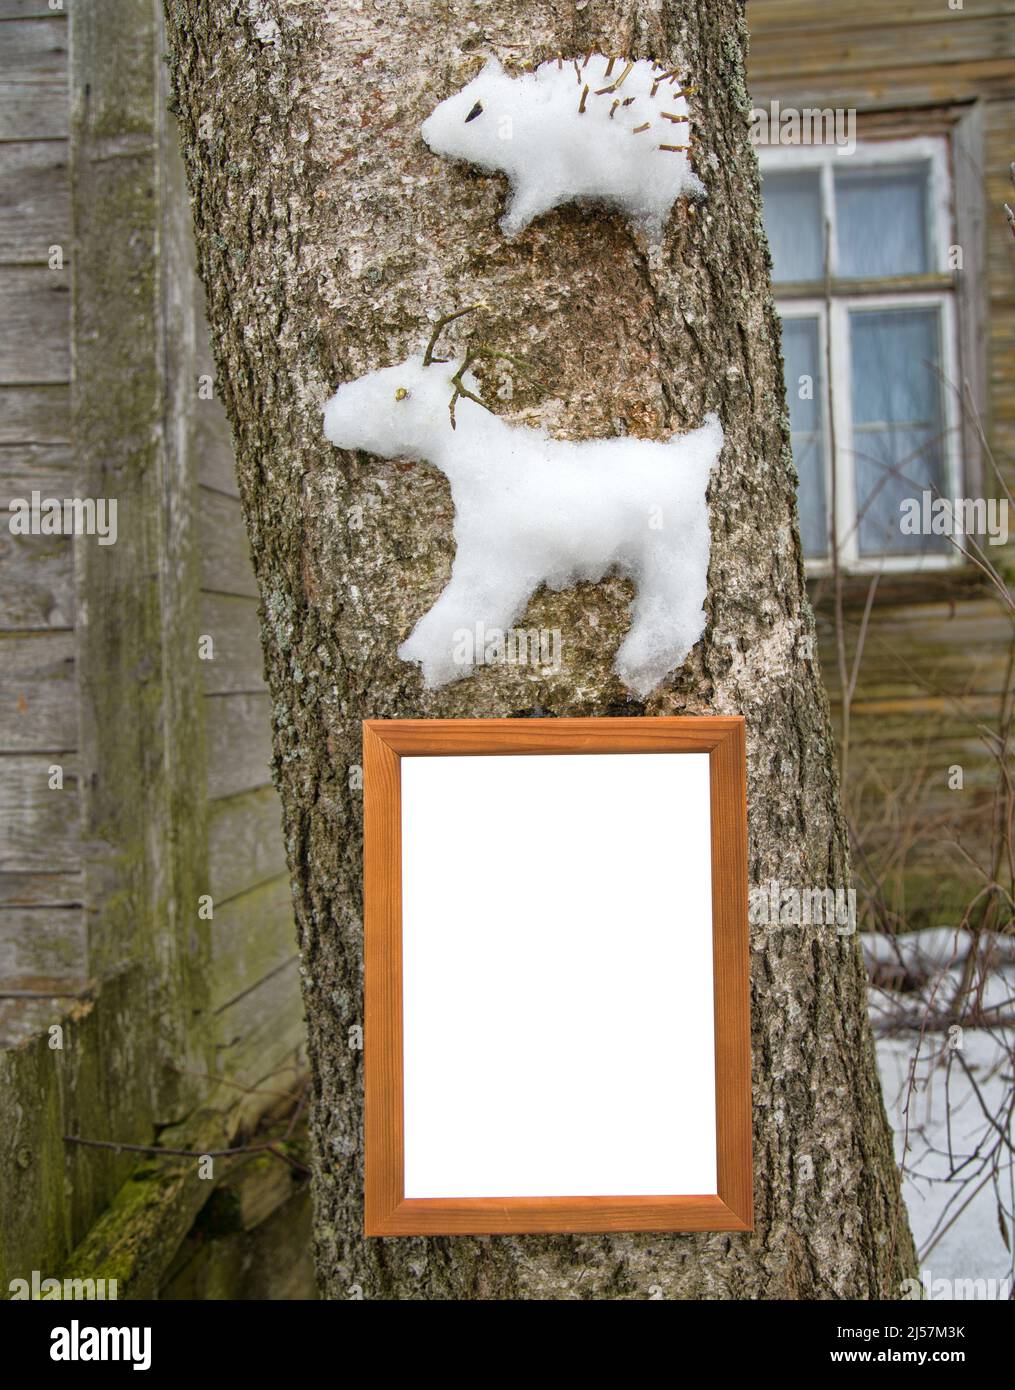 Les figures de neige (renne et hérisson) sont collées sur un tronc d'arbre. Projets créatifs d'hiver pour les enfants et les jeunes. Cadre pour félicitations Banque D'Images